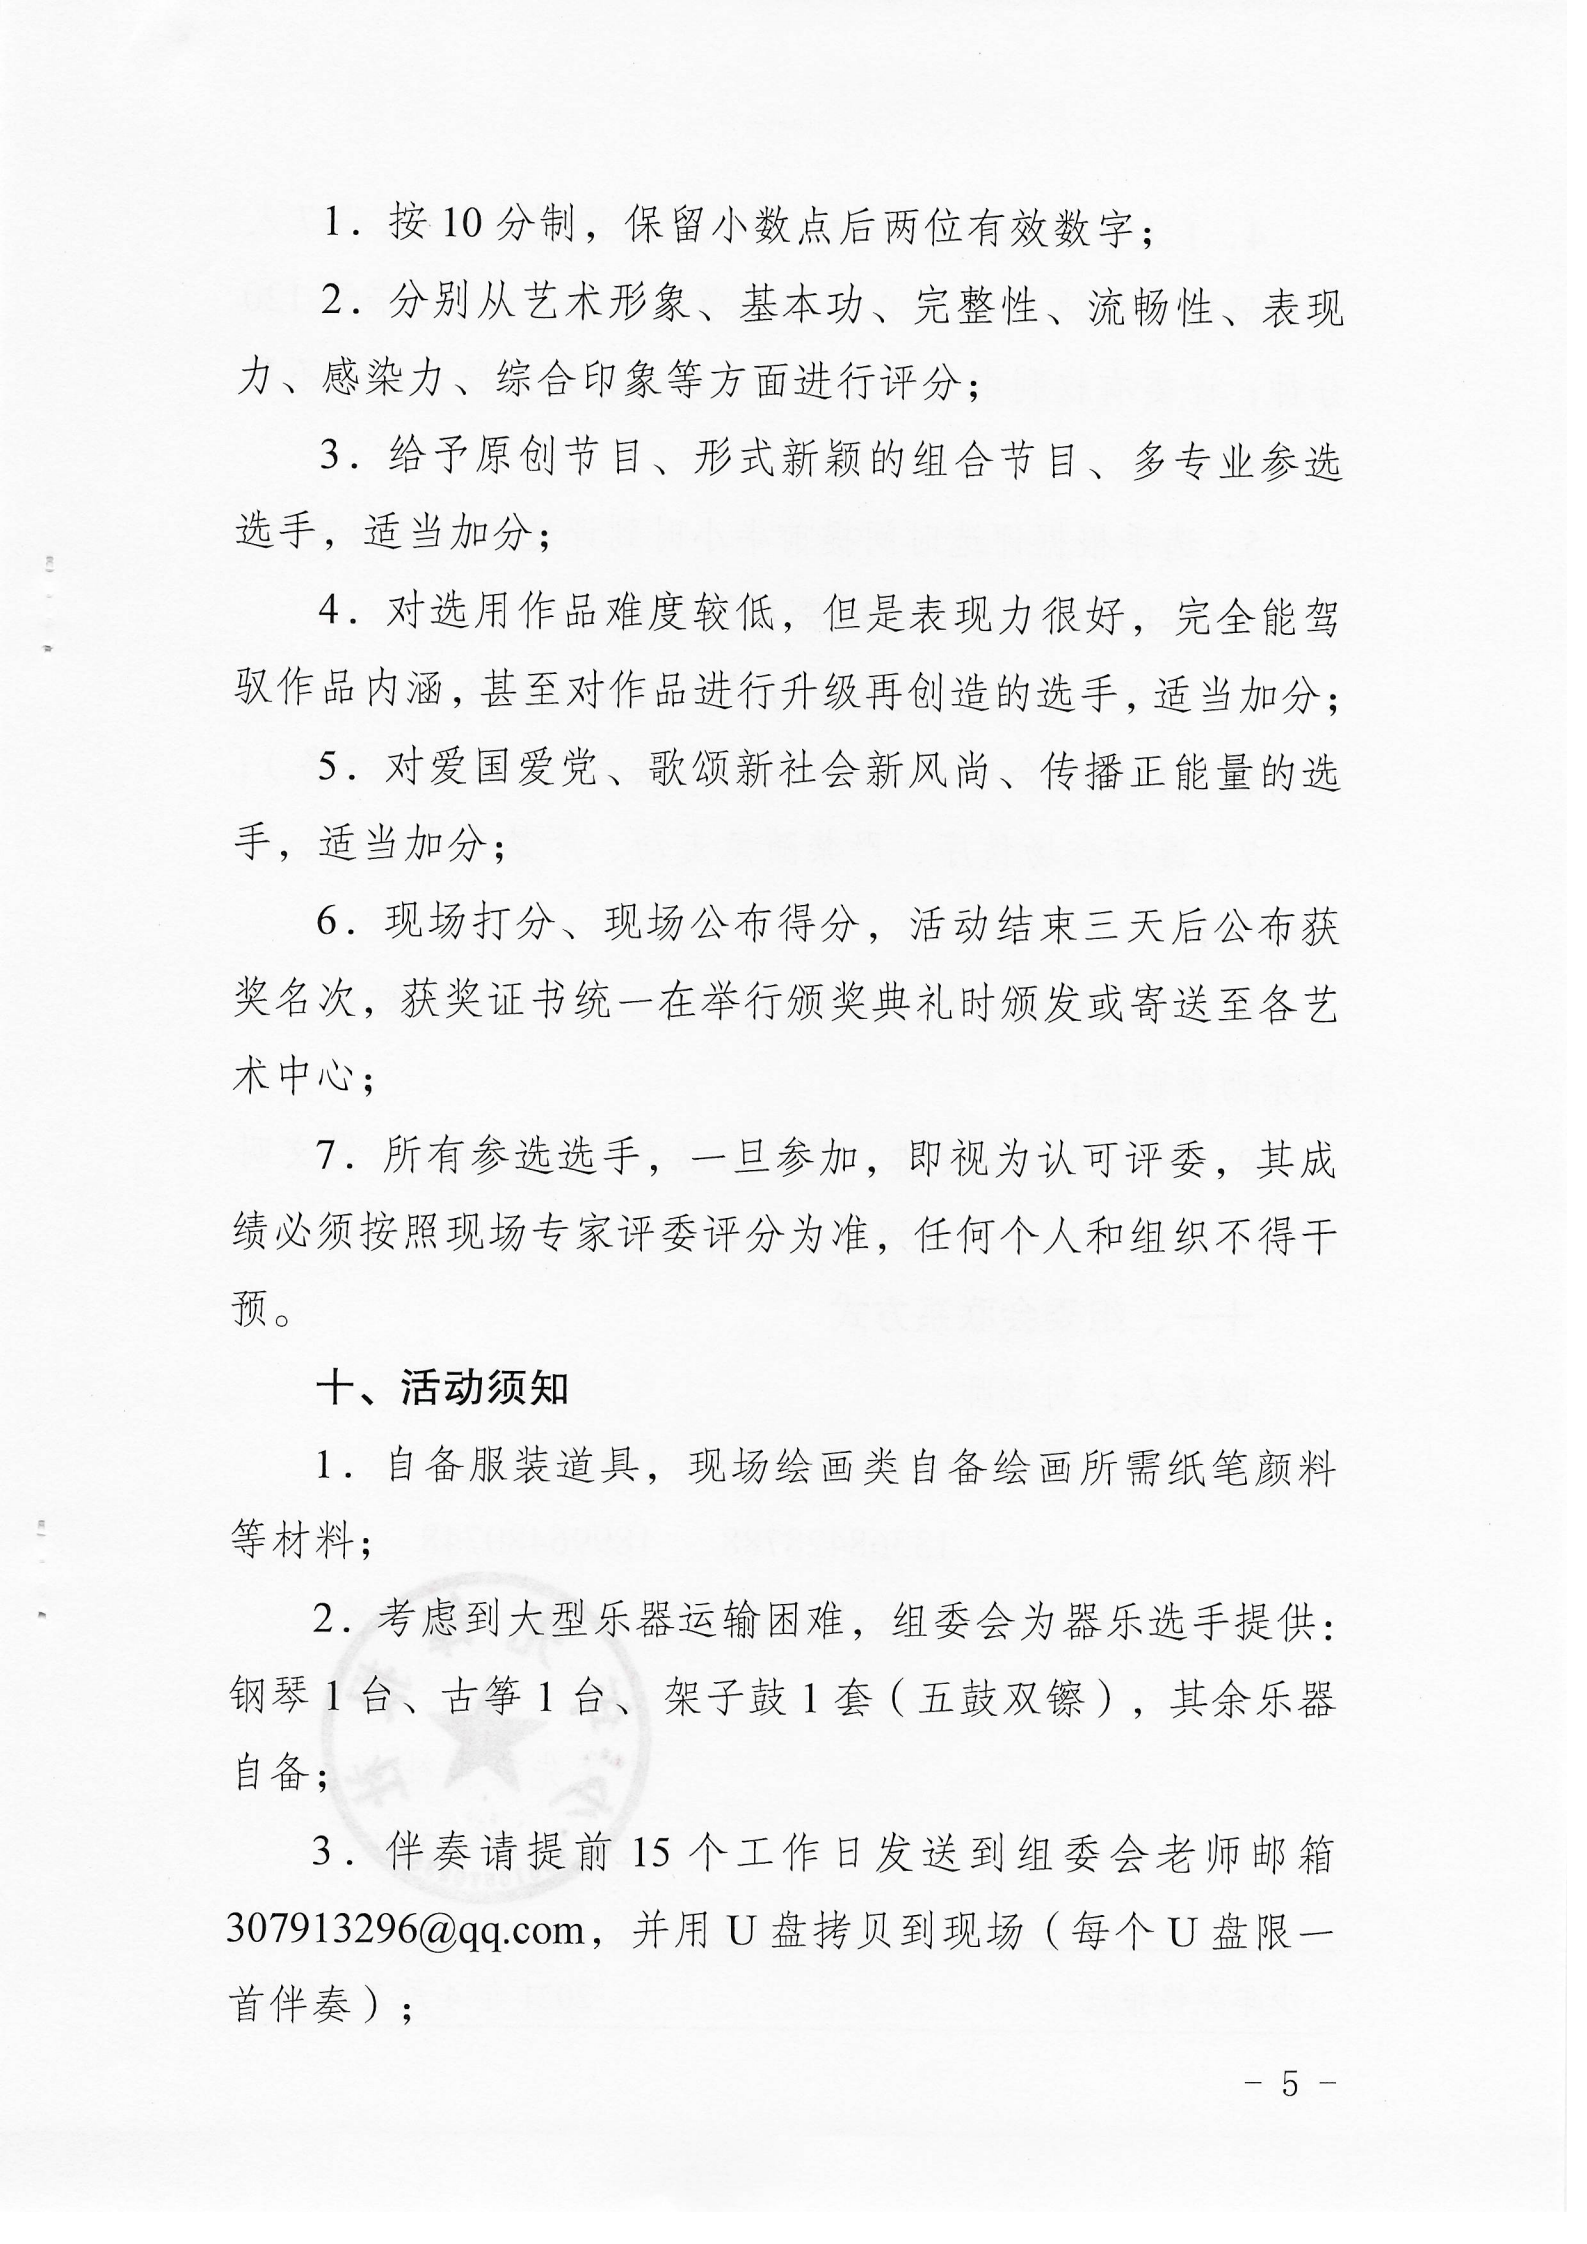 6_少社行〔2021〕17号 关于开展重庆市青少年艺术展演活动的通知_04.png